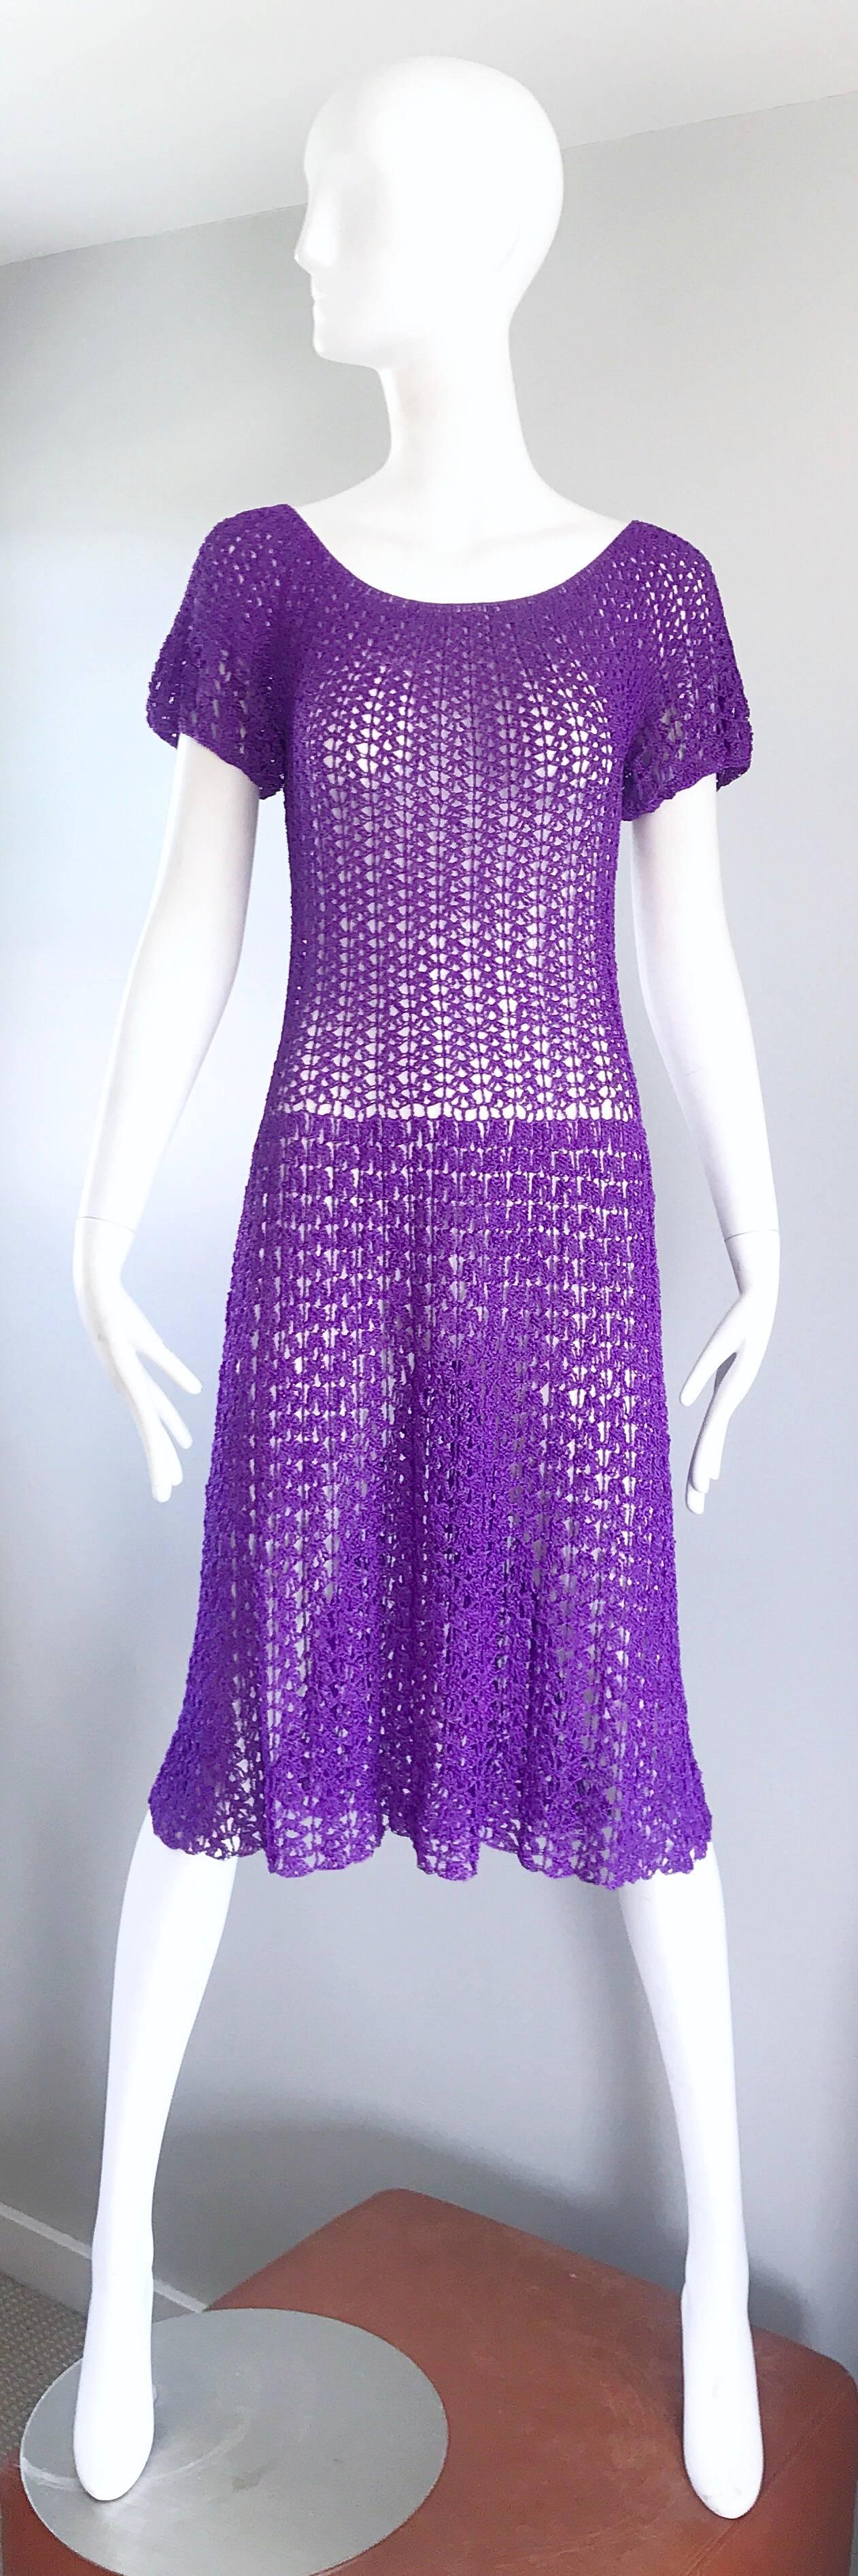 Magnifique robe des années 1960 en rayonne italienne violette crochetée à la main, longueur au genou ! La construction de cette beauté difficile à trouver est impeccable ! Entièrement cousu à la main, avec un souci du détail. Il s'agit sans aucun